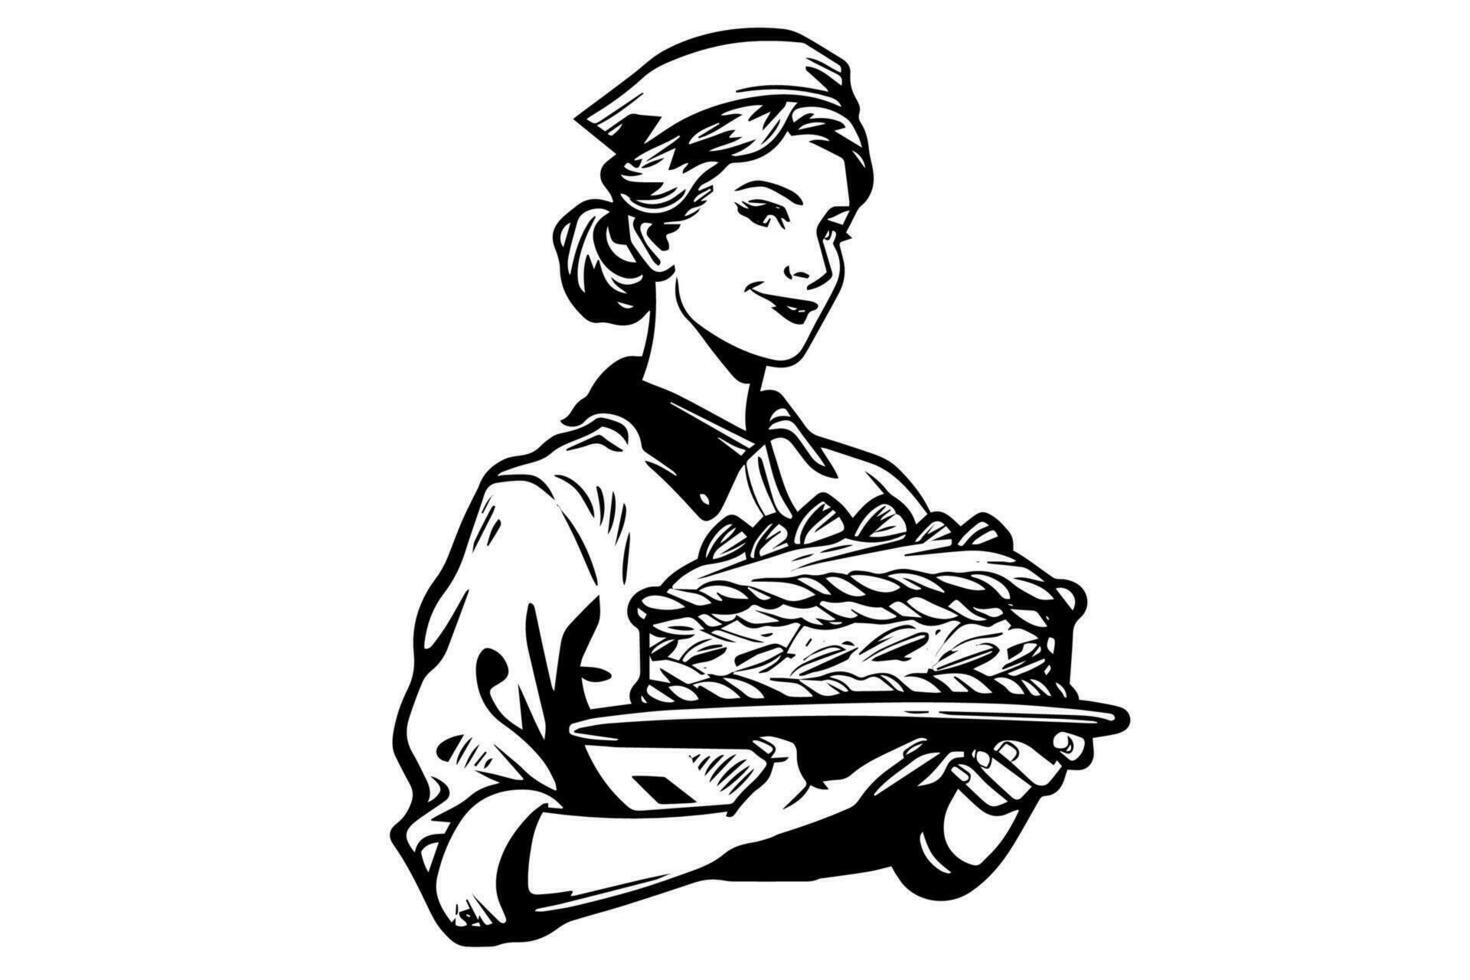 Hand gezeichnet Tinte skizzieren von weiblich Bäcker mit gebacken Brot auf ein Tablett. graviert Stil Vektor Illustration. Design zum Logo, Werbung.